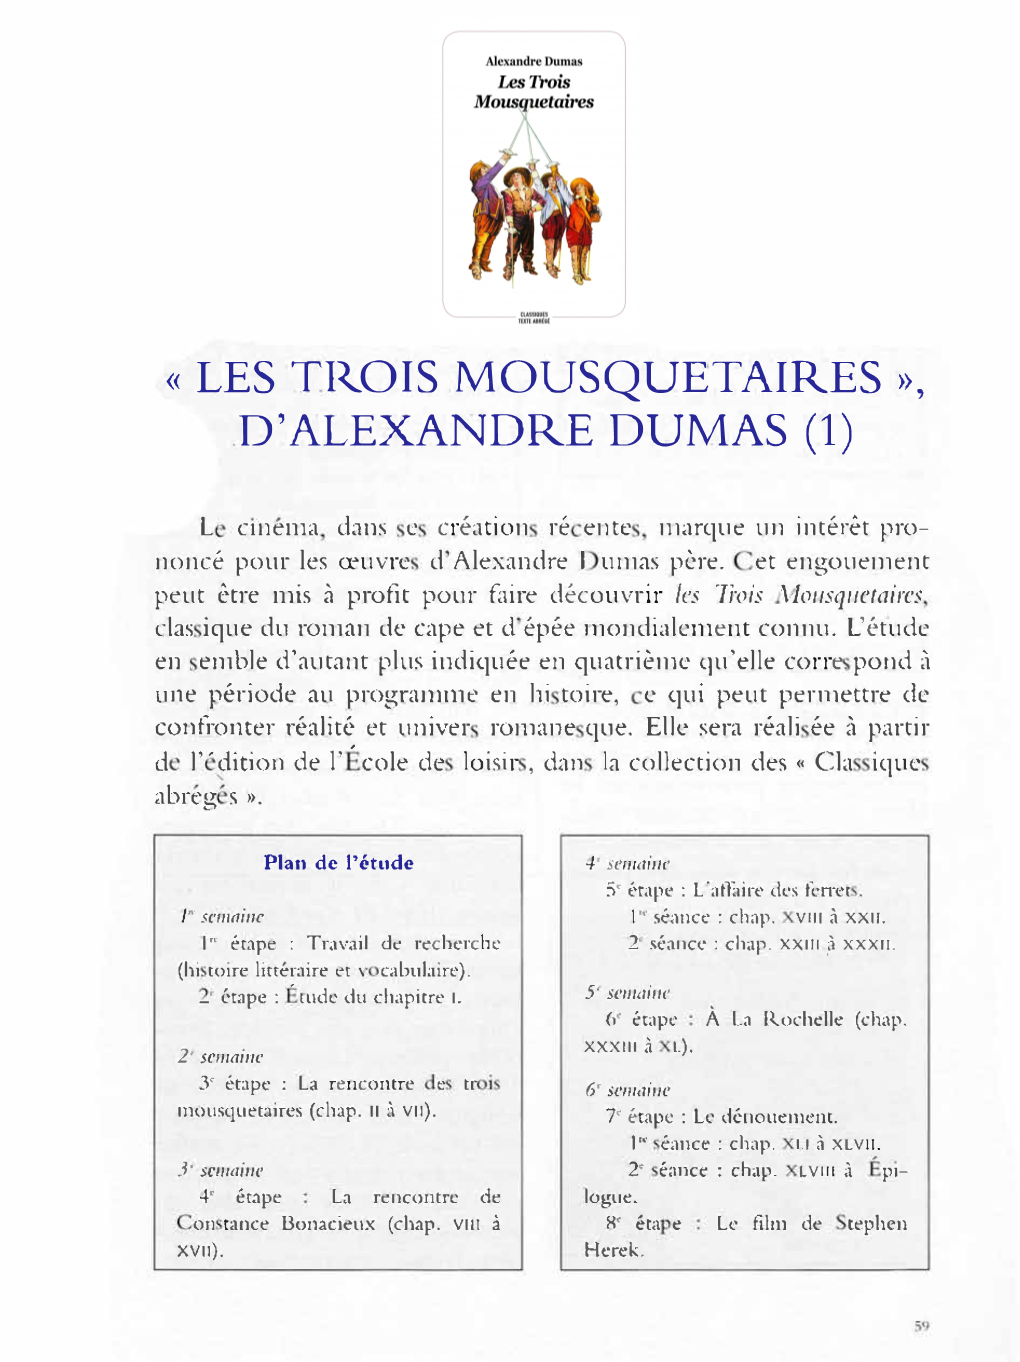 « Les Trois Mousquetaires », D'alexandre Dumas (1)